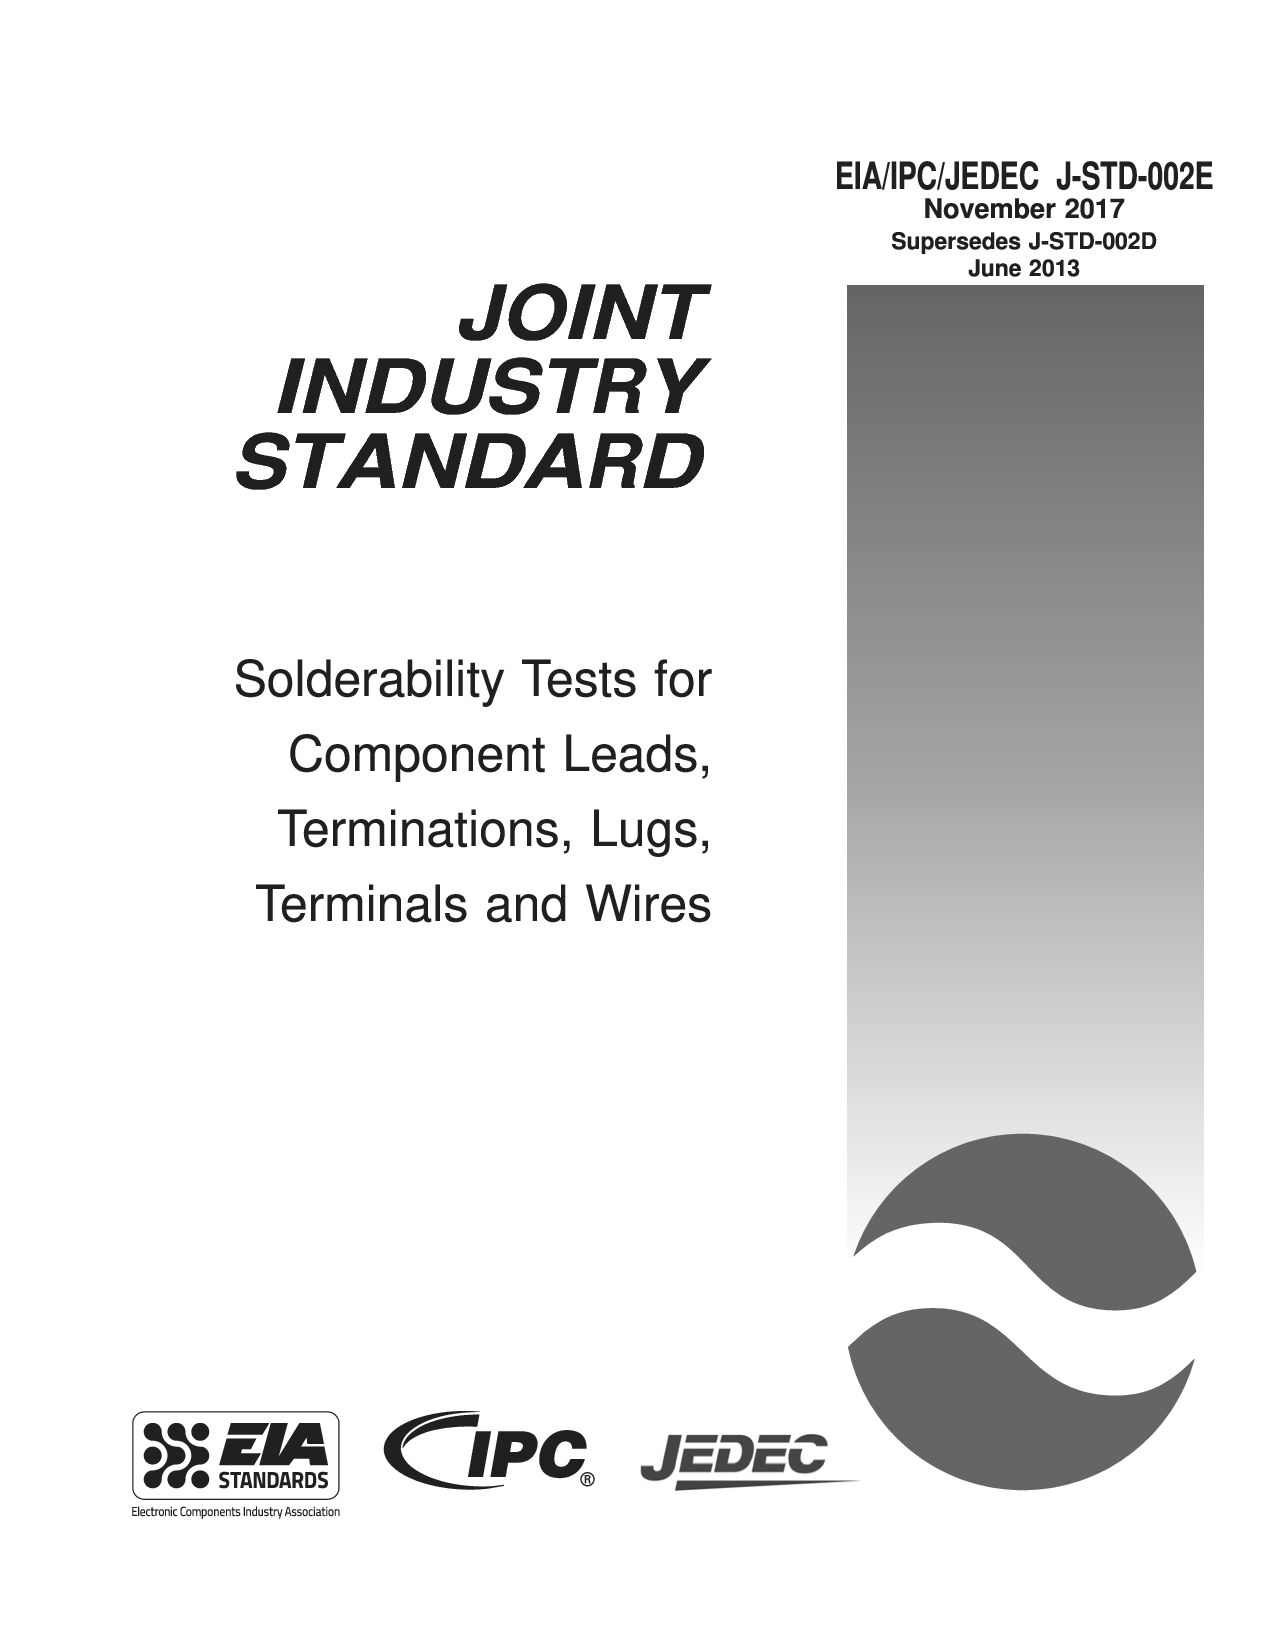 EIA IPC JEDEC J-STD-002E-2017封面图